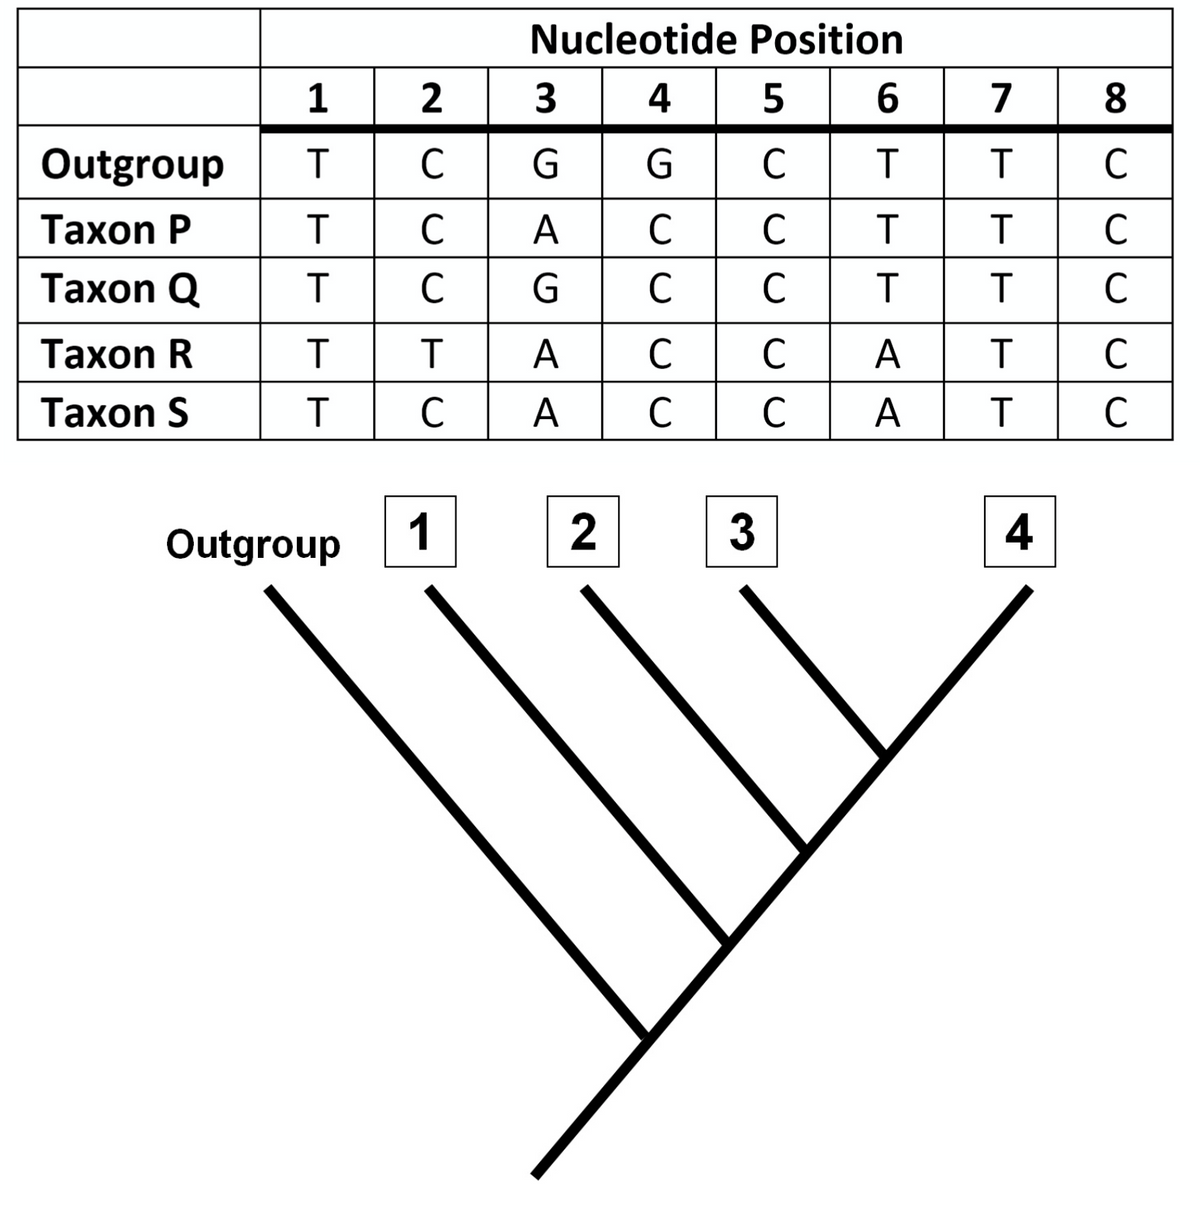 Nucleotide Position
| 8
2 3
C G G C
1
4
5
6
7
Outgroup
T
T
C
Таxon P
C
А
C
C
T
C
Тахon Q
C
C
C
C
Таxon R
A
C
C
А
C
Таxon S
C
А
C
A
T
C
Outgroup
1
3
4
